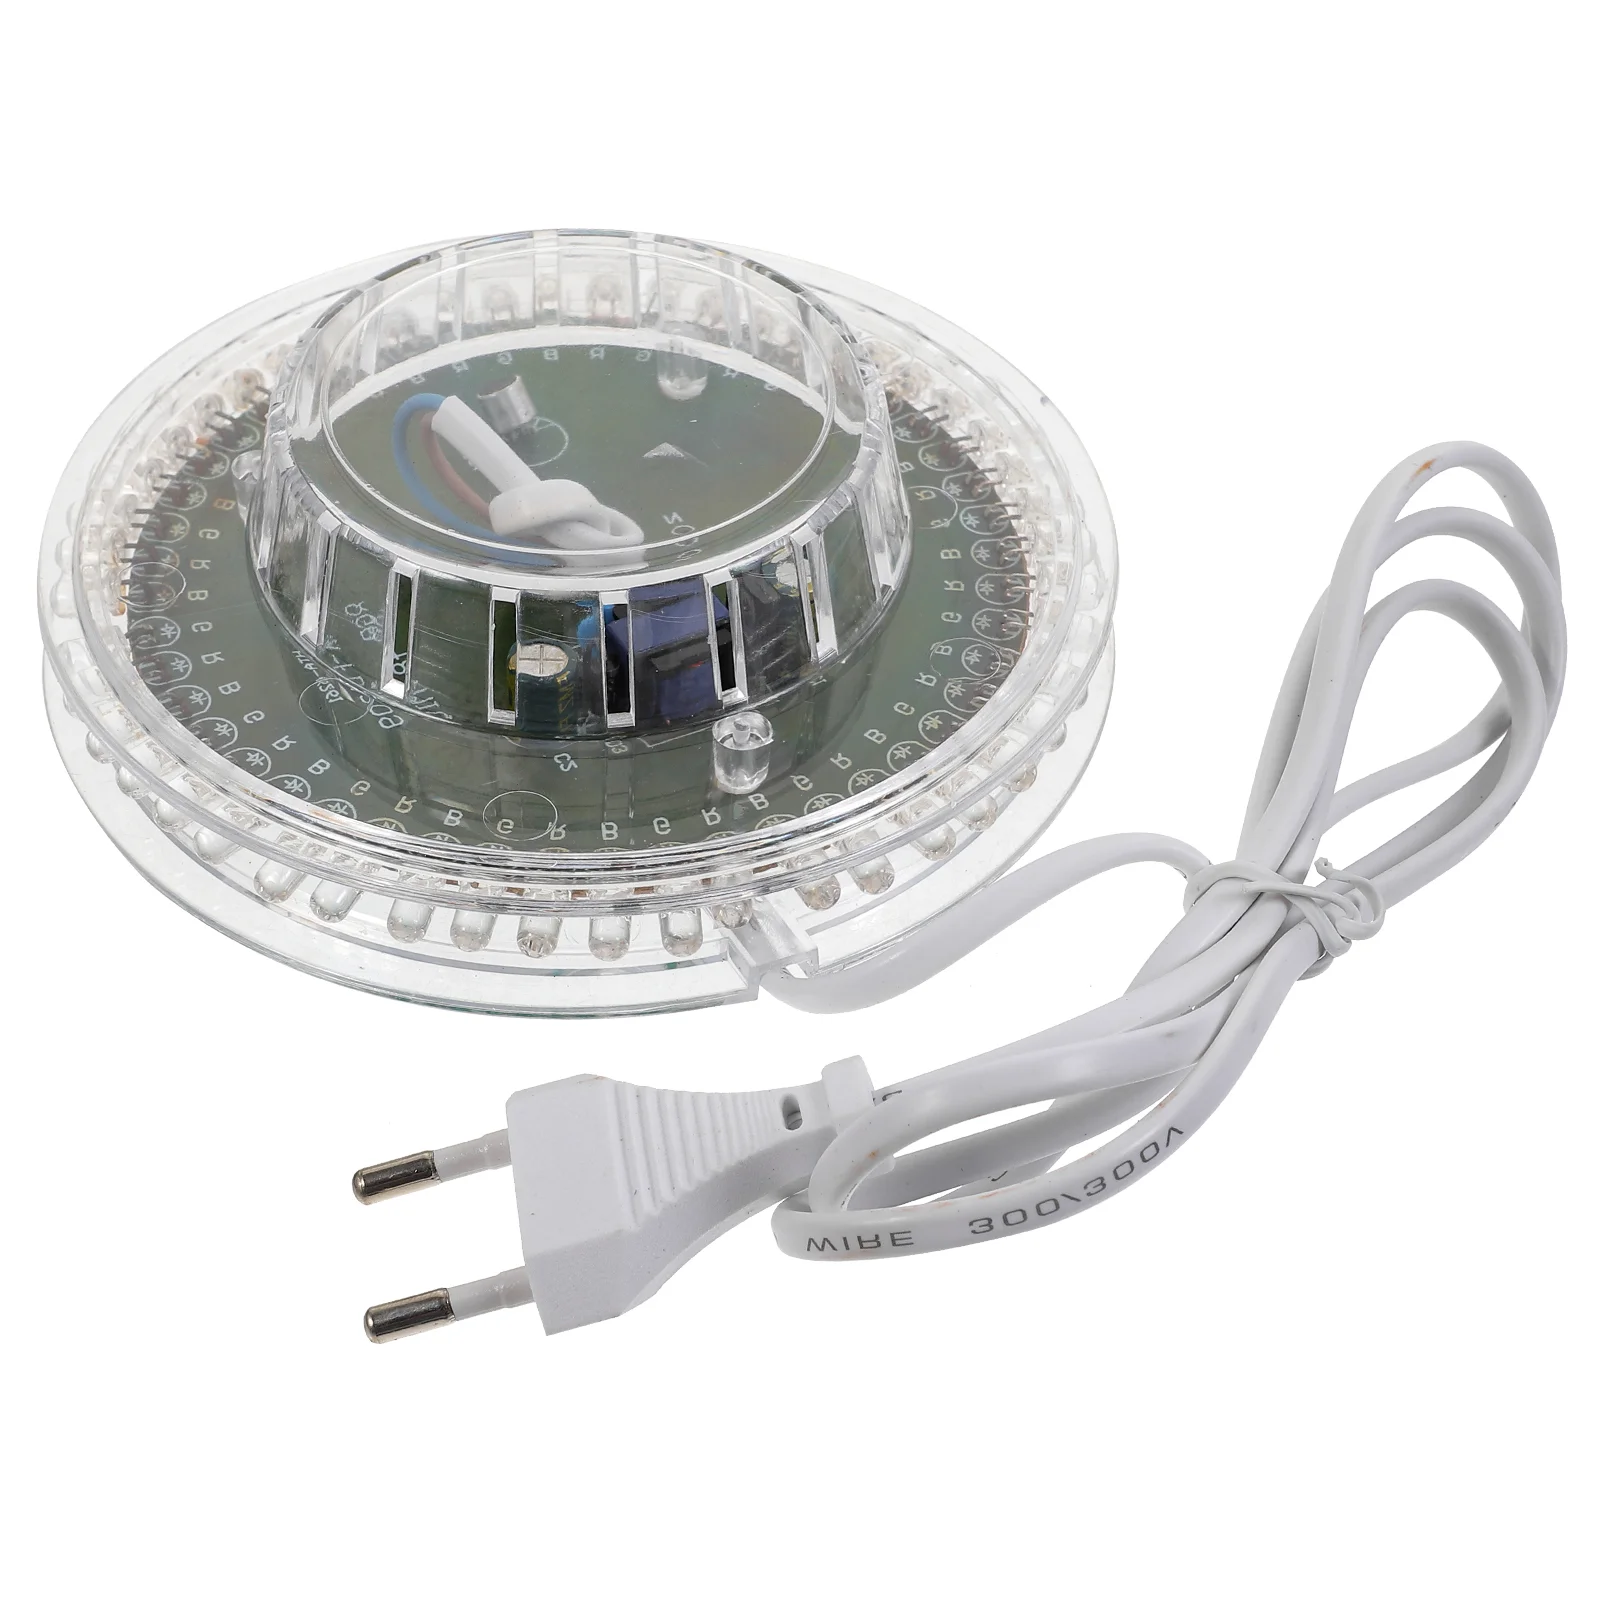 

Novelty Sunflower Shaped Voice-Activated /Auto Rotating 48-LED RGB Light LED Party Light (White, EU Plug)